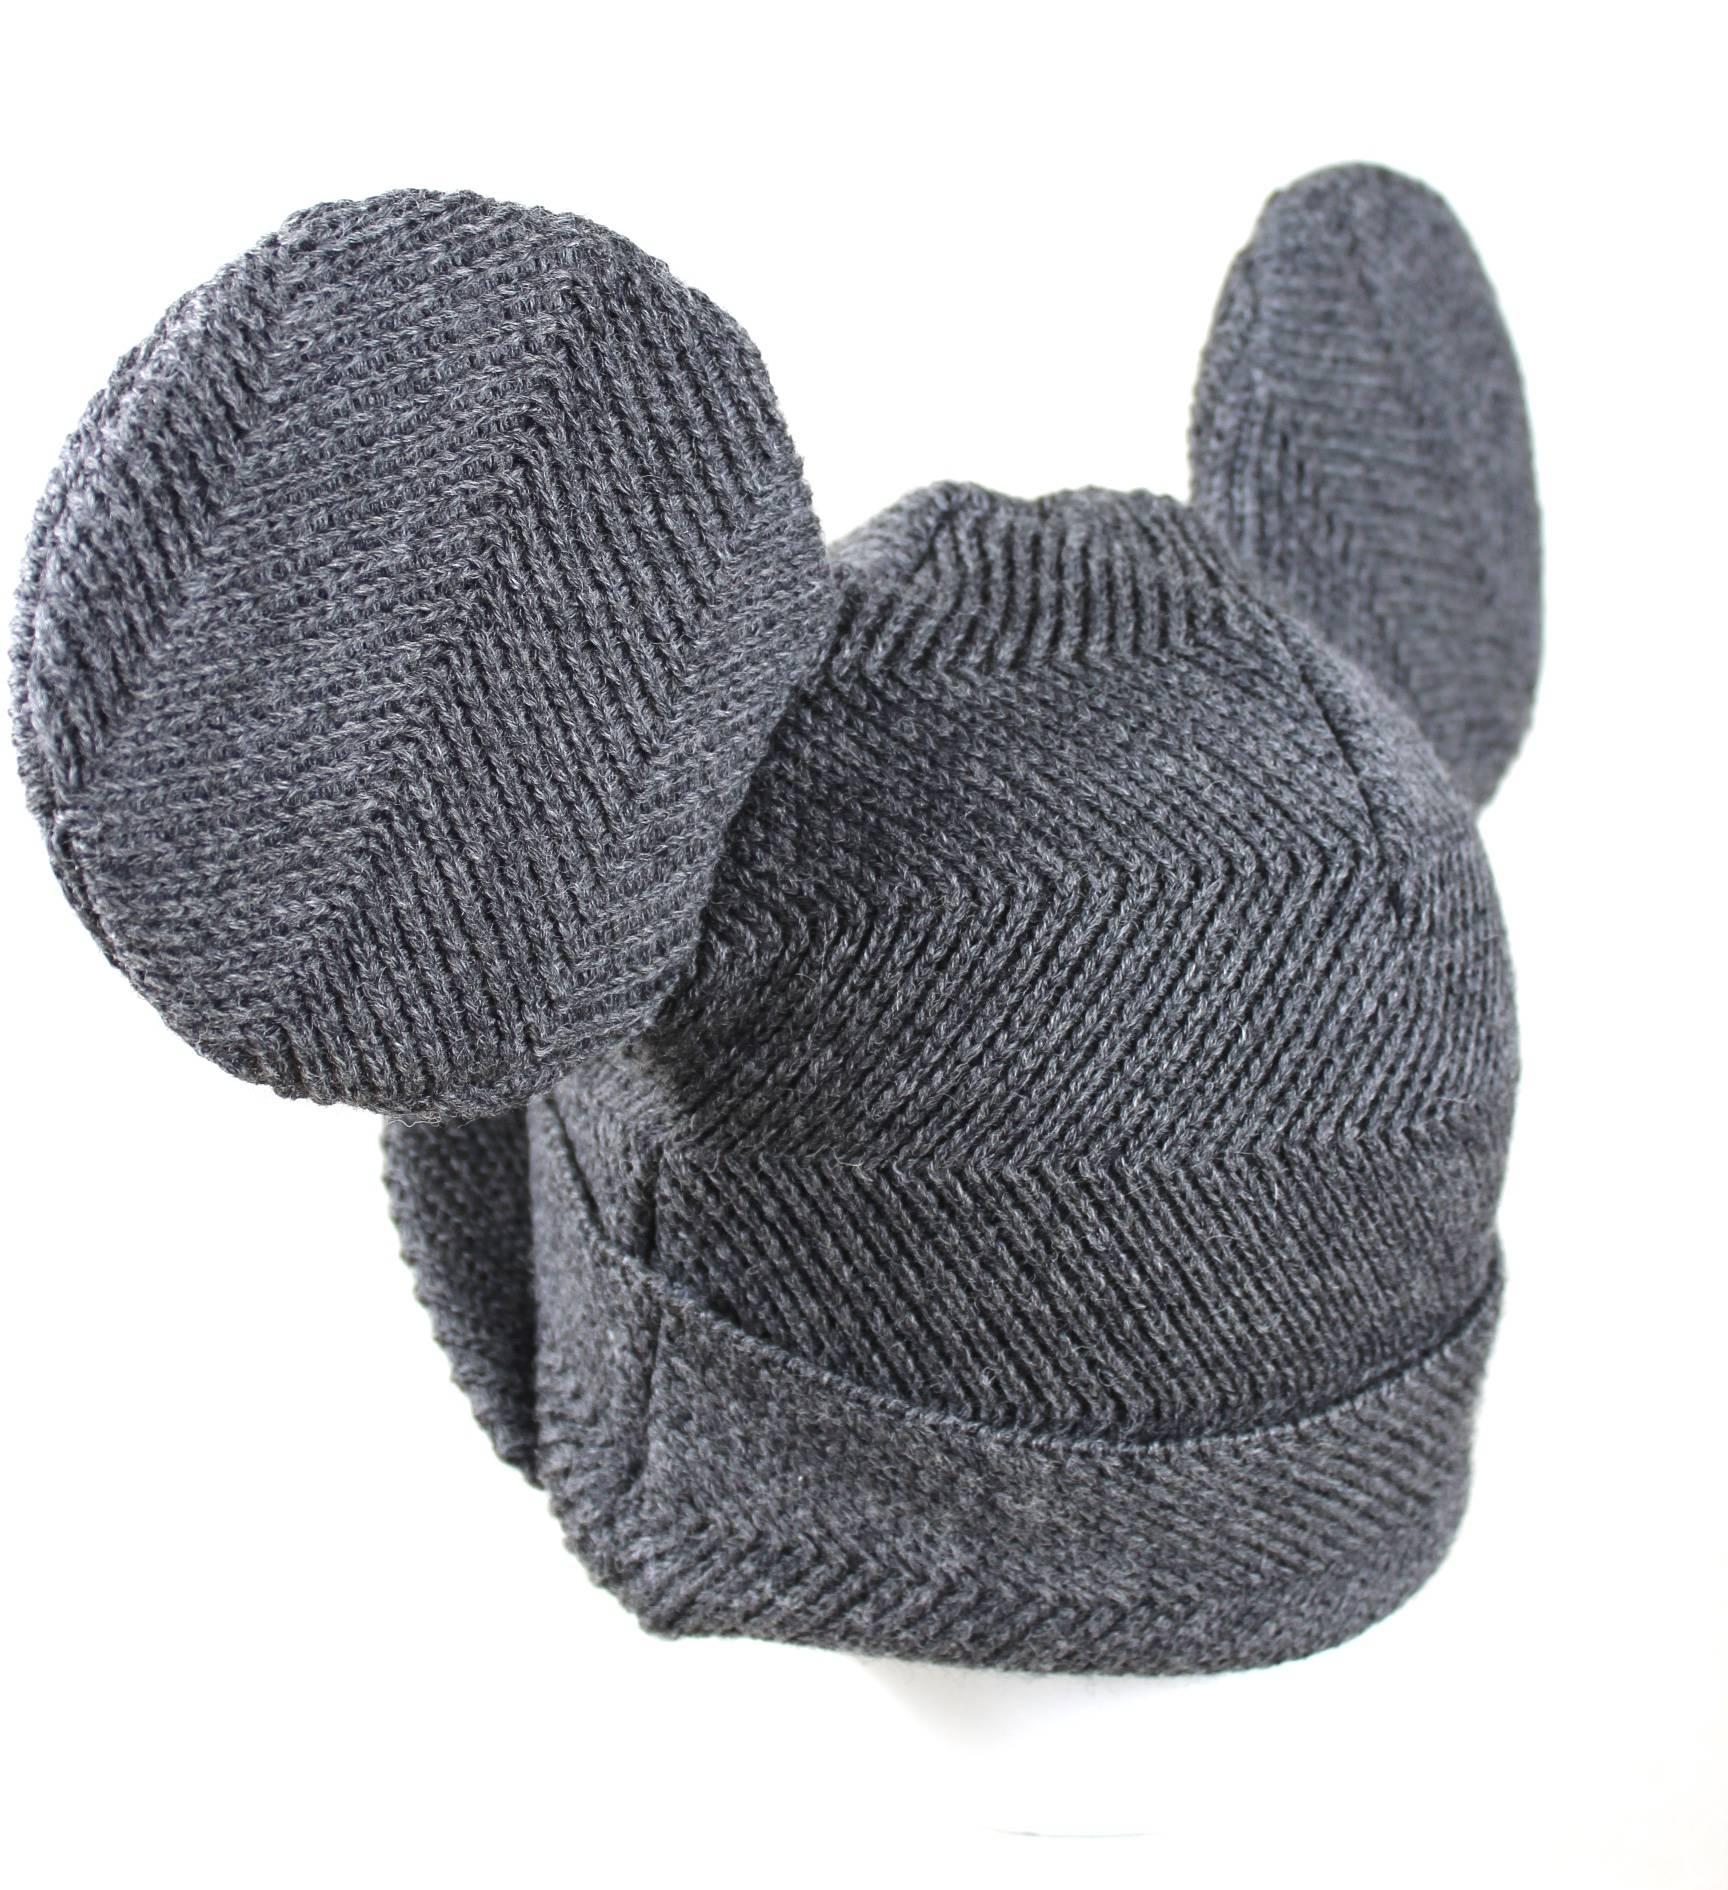 Gray Comme des Garcons / Stephen Jones Mouse Ear Hat AD 2013